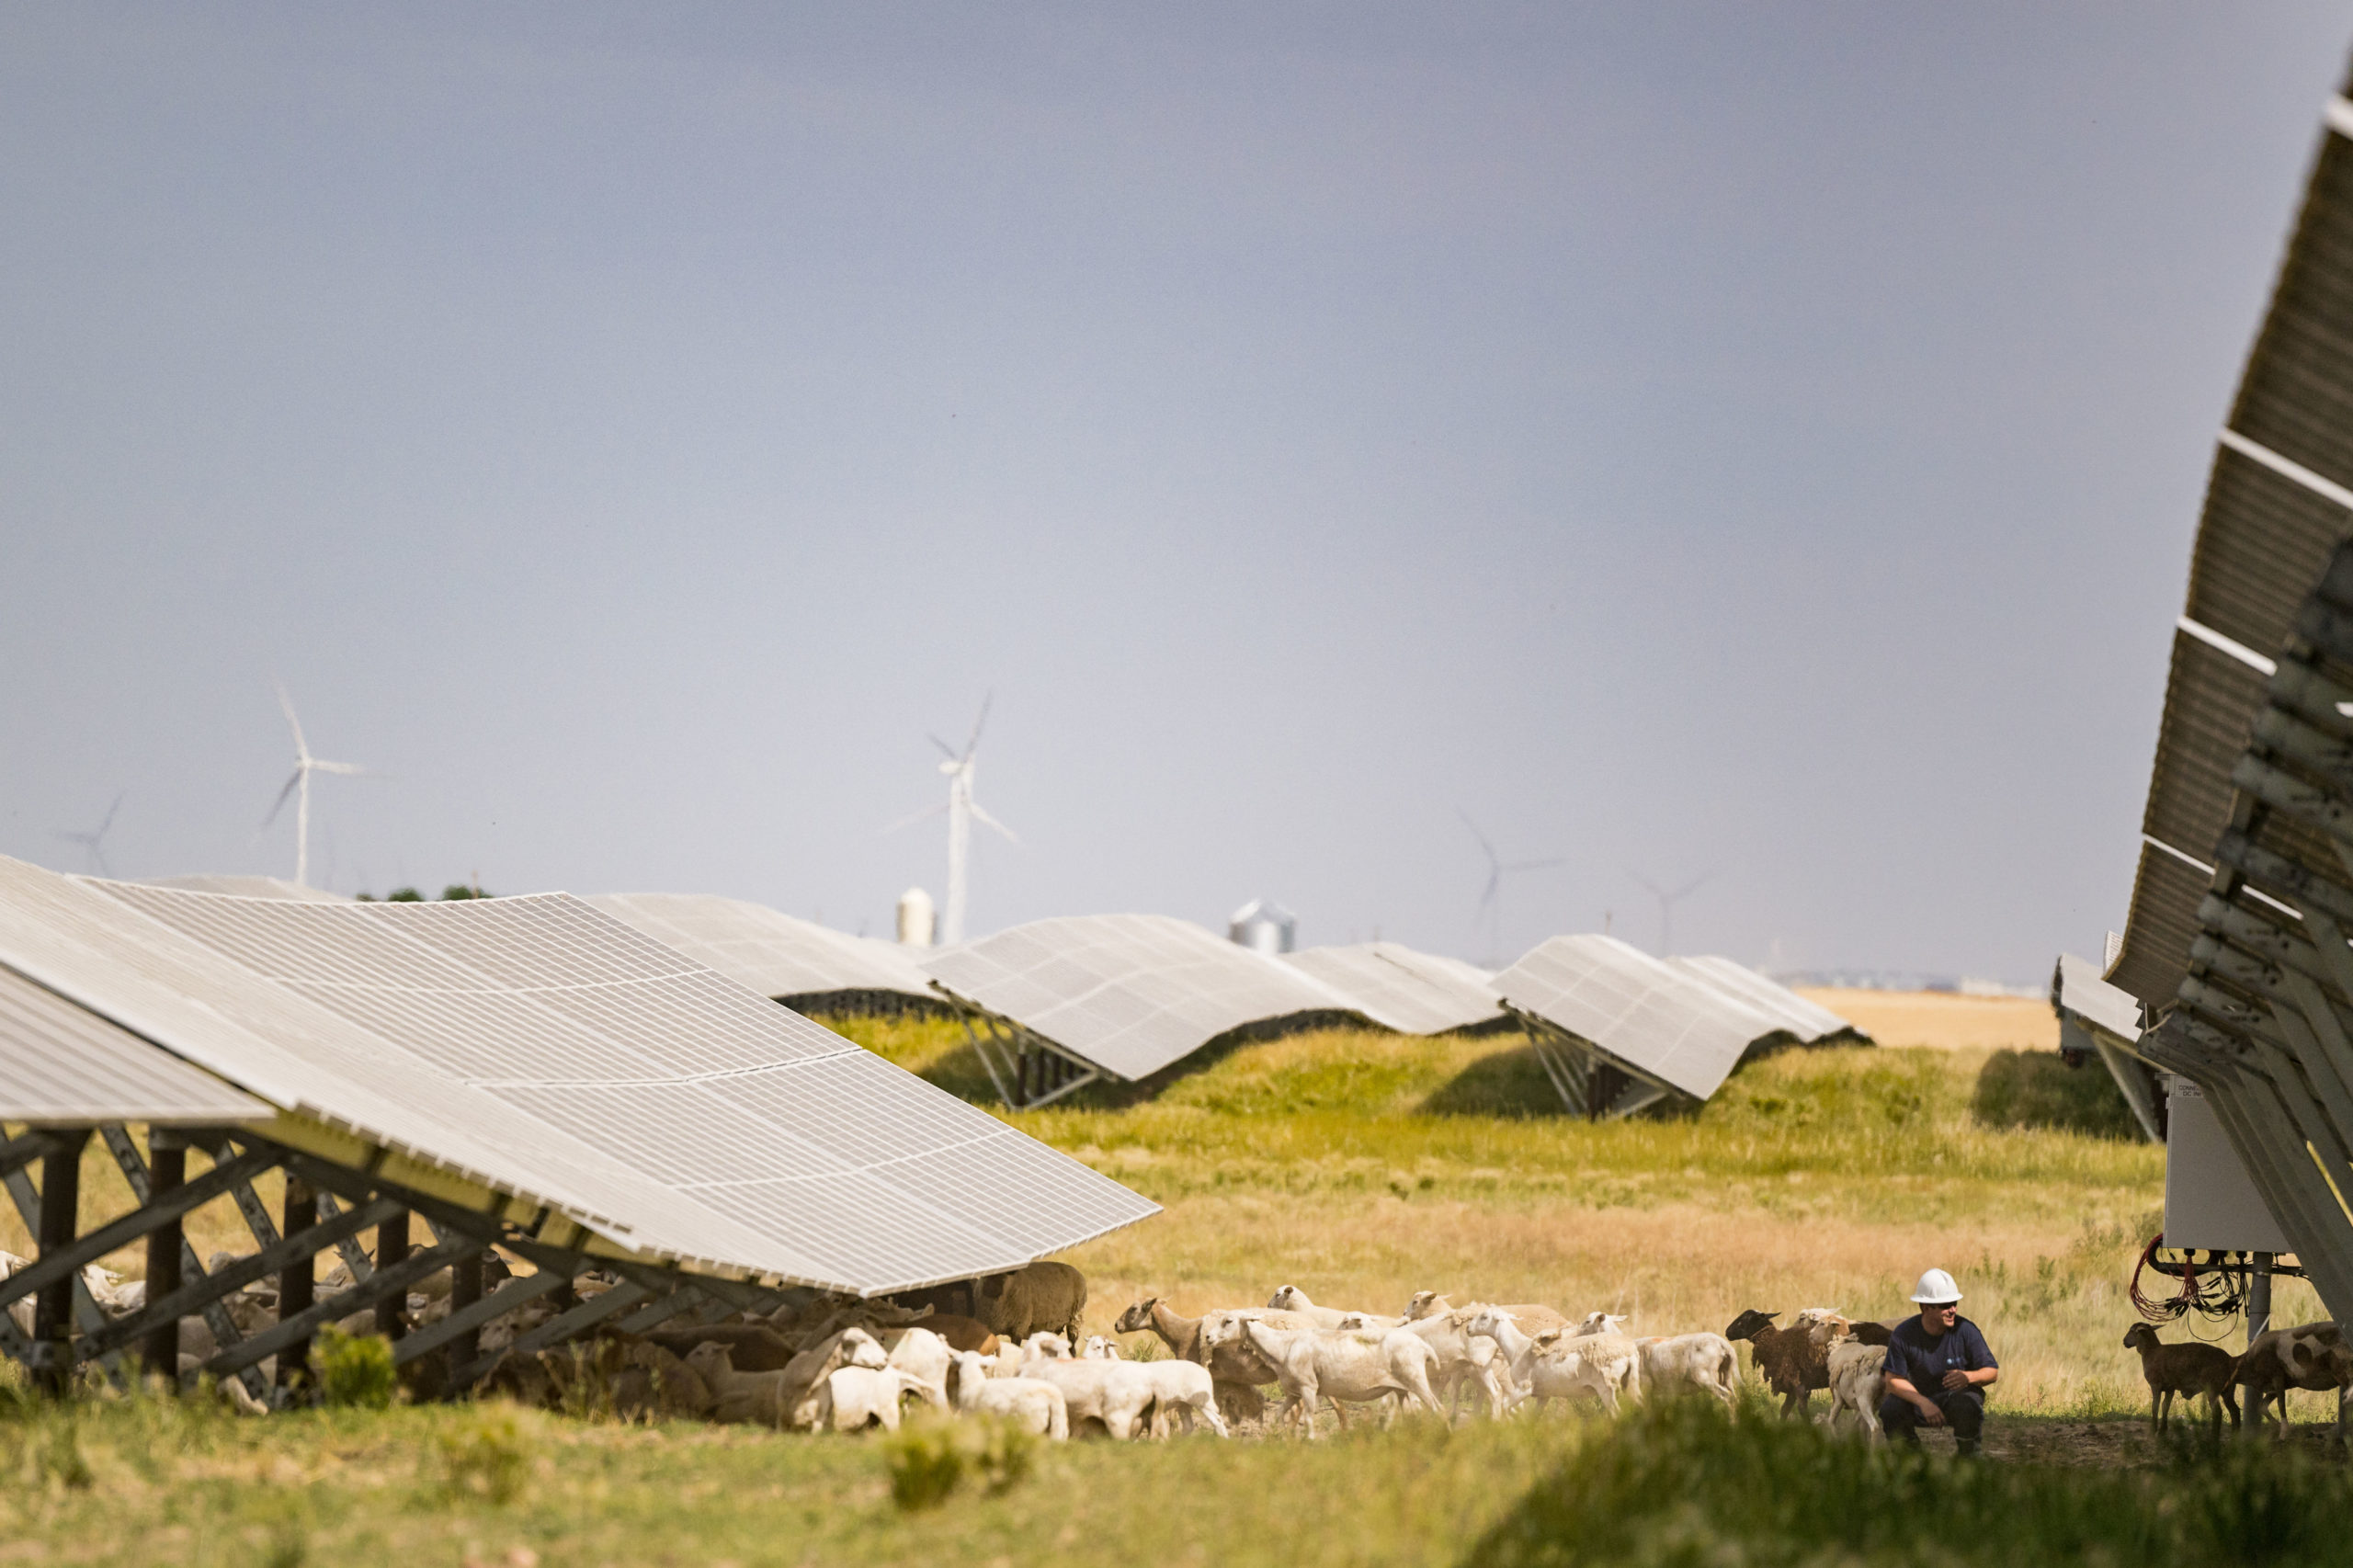 Sheep graze at the Yellow Lake solar facility